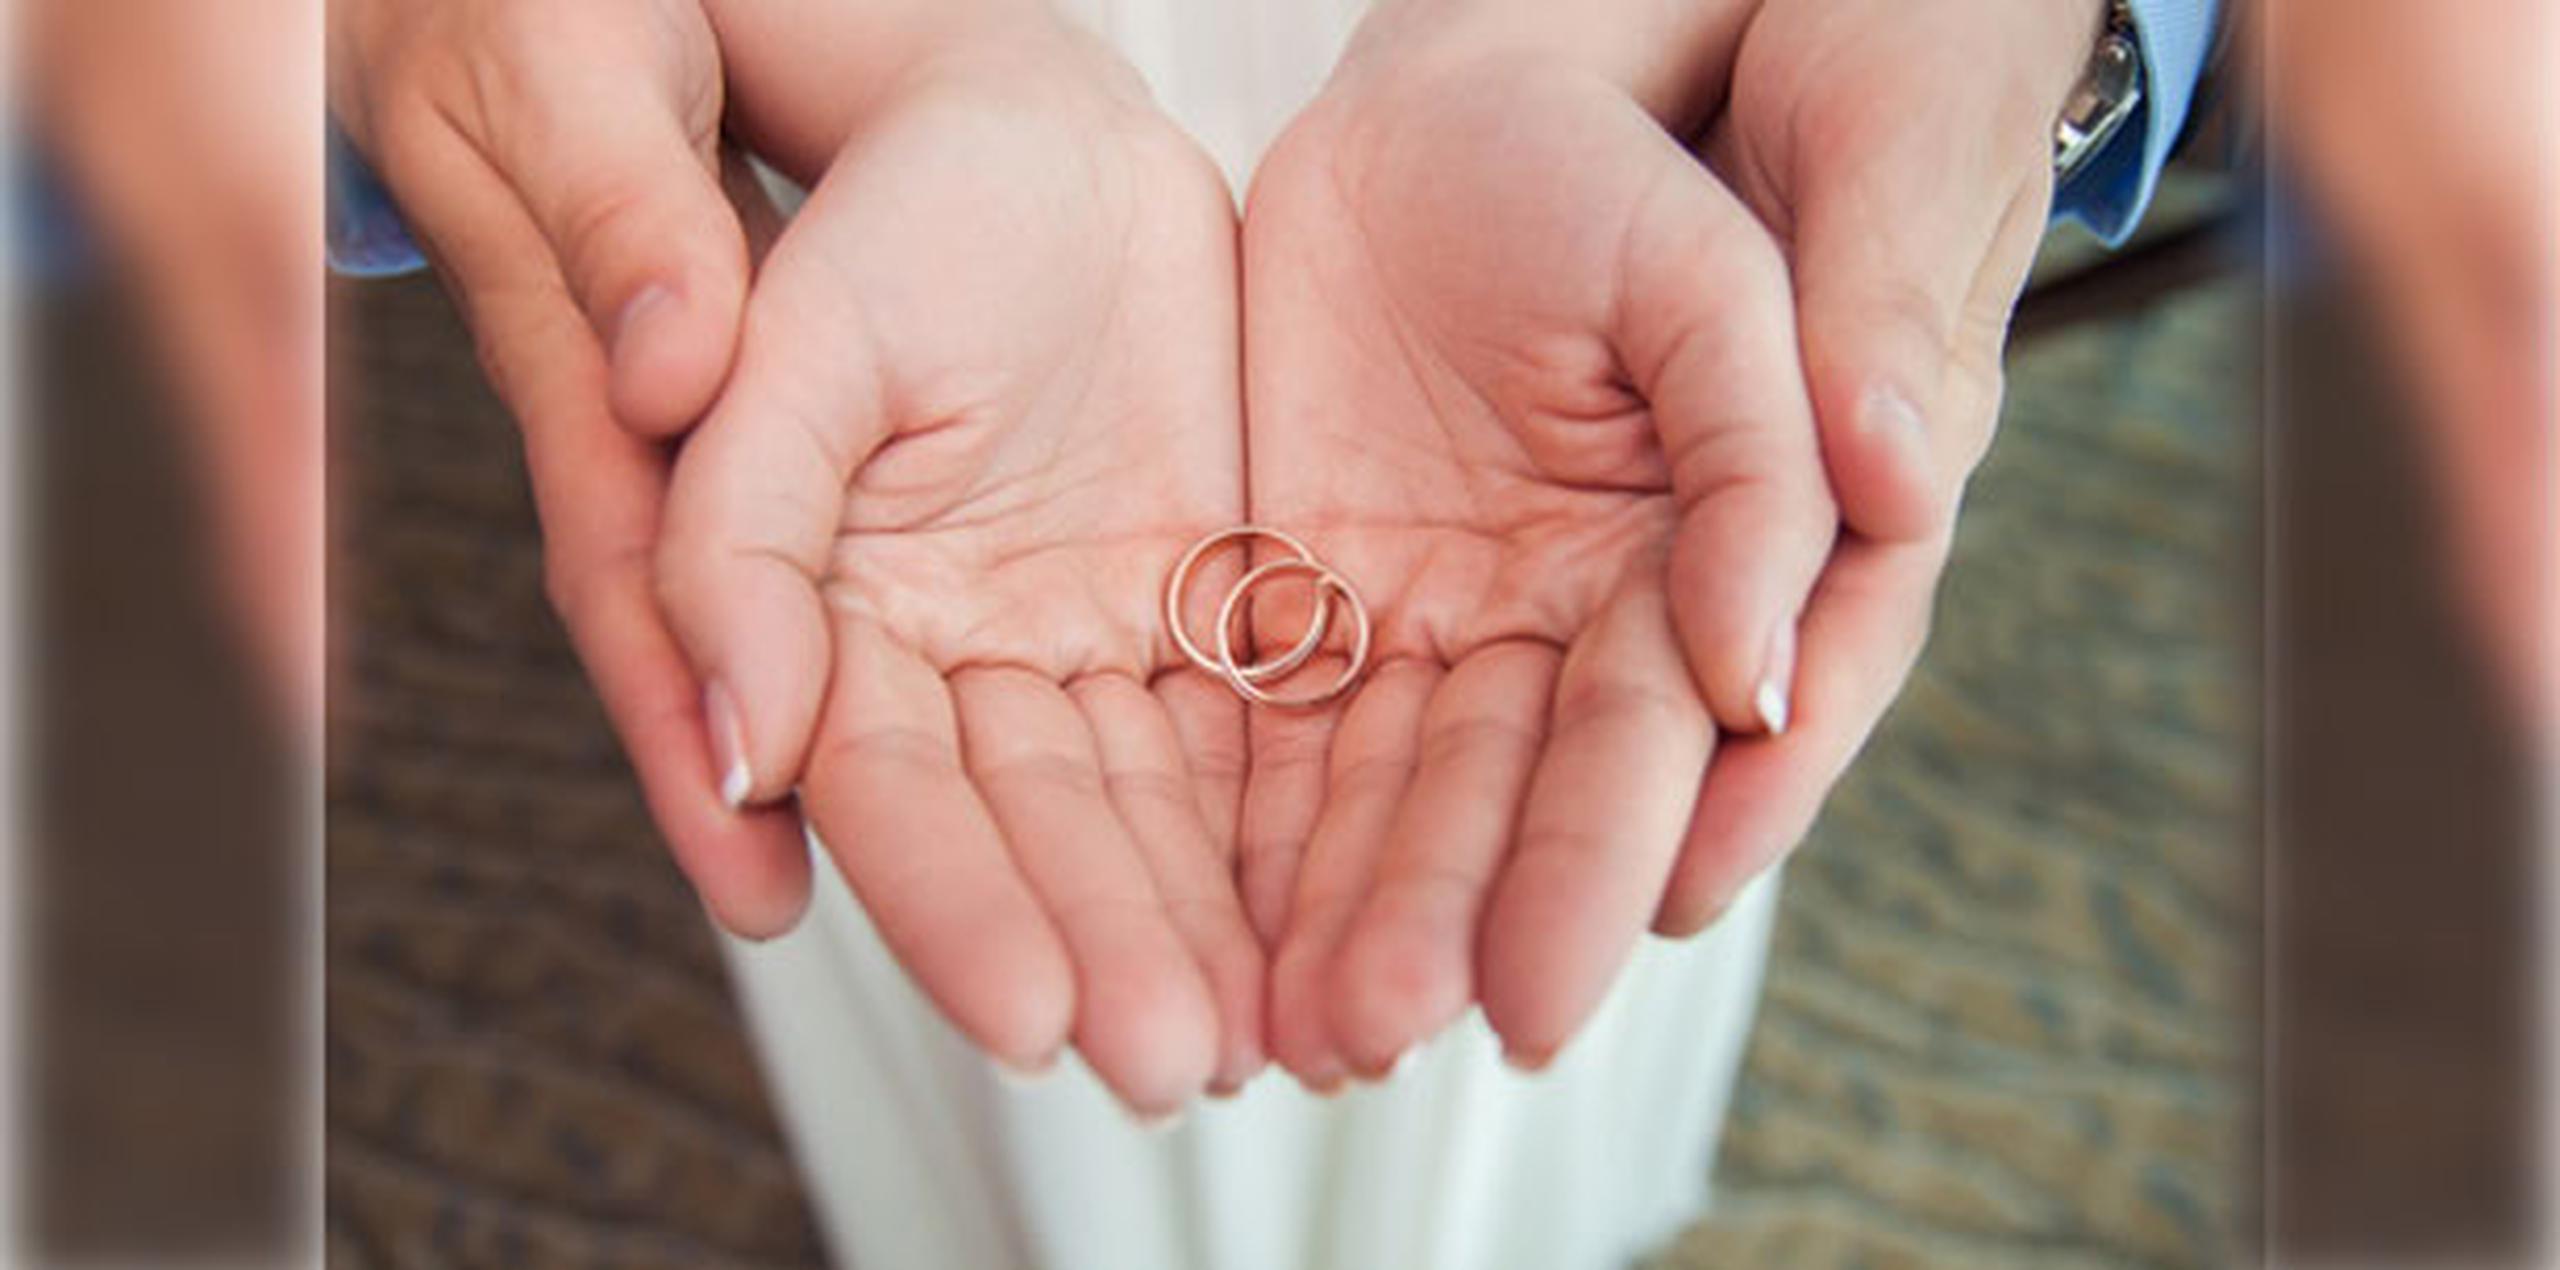 Al medio día se llevará a cabo la gran renovación masiva de compromiso matrimonial, en la que podrán participar parejas casadas o que vivan en seria convivencia. (Shutterstock)